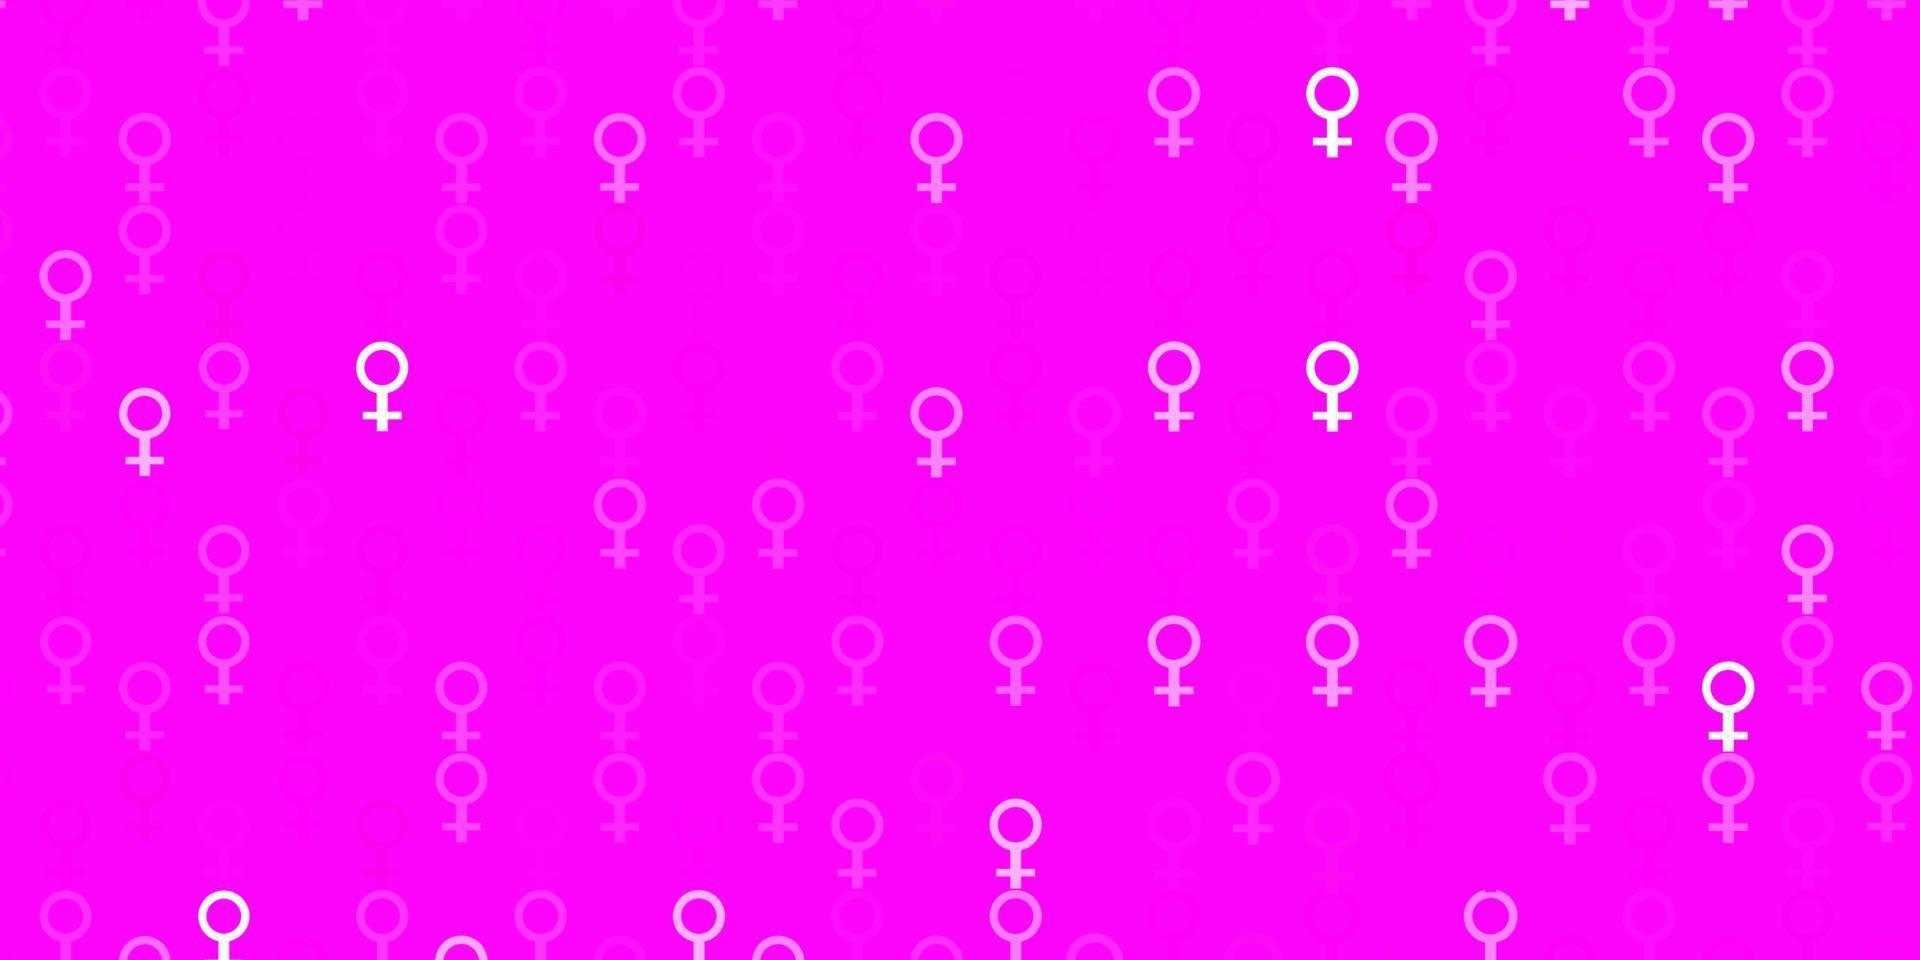 patrón de vector rosa claro con elementos de feminismo.